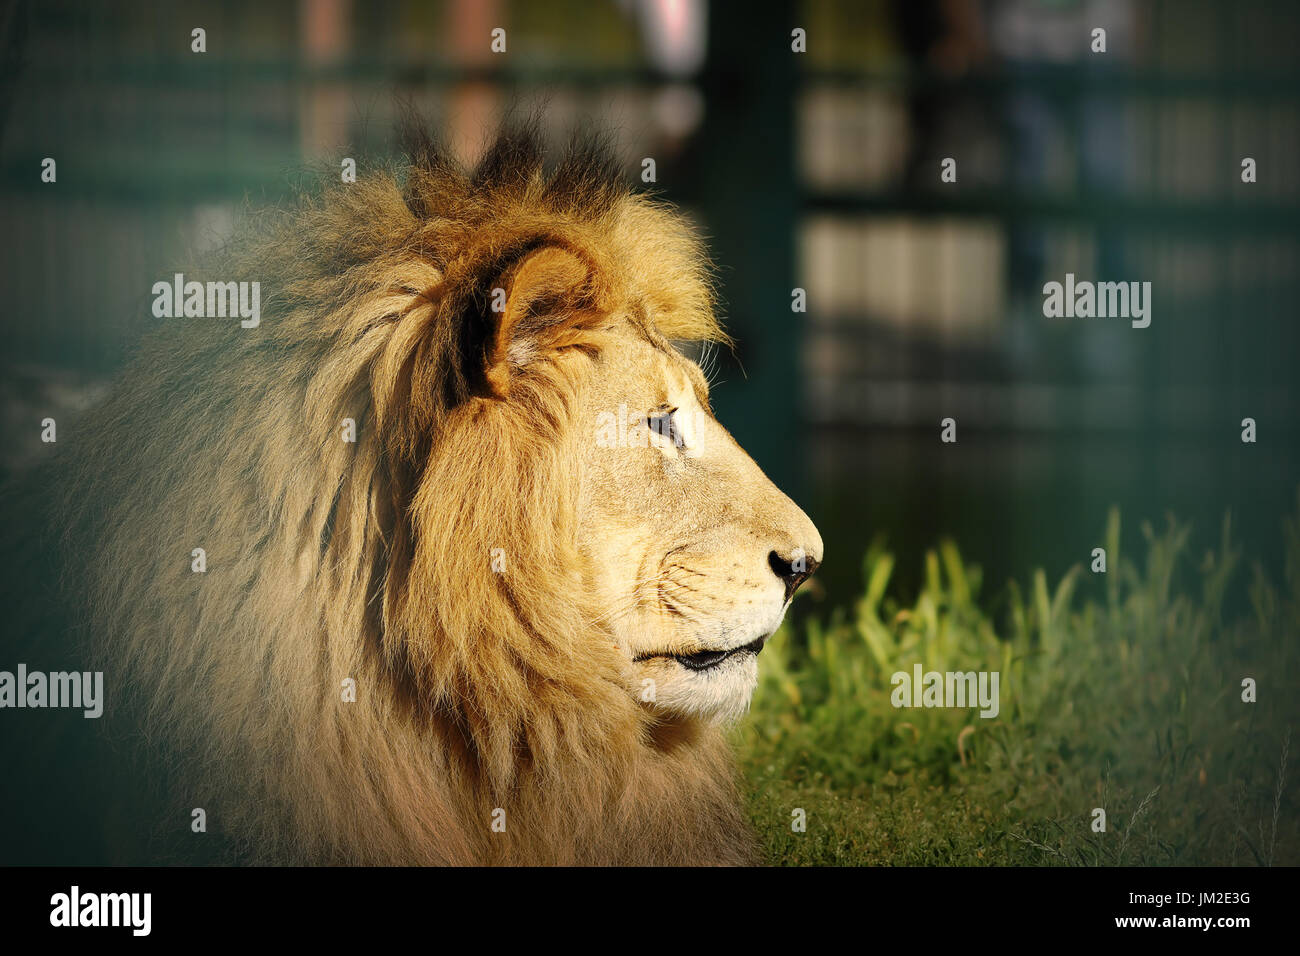 Ritratto di vecchio leone con vignette, animale in cattività Foto Stock